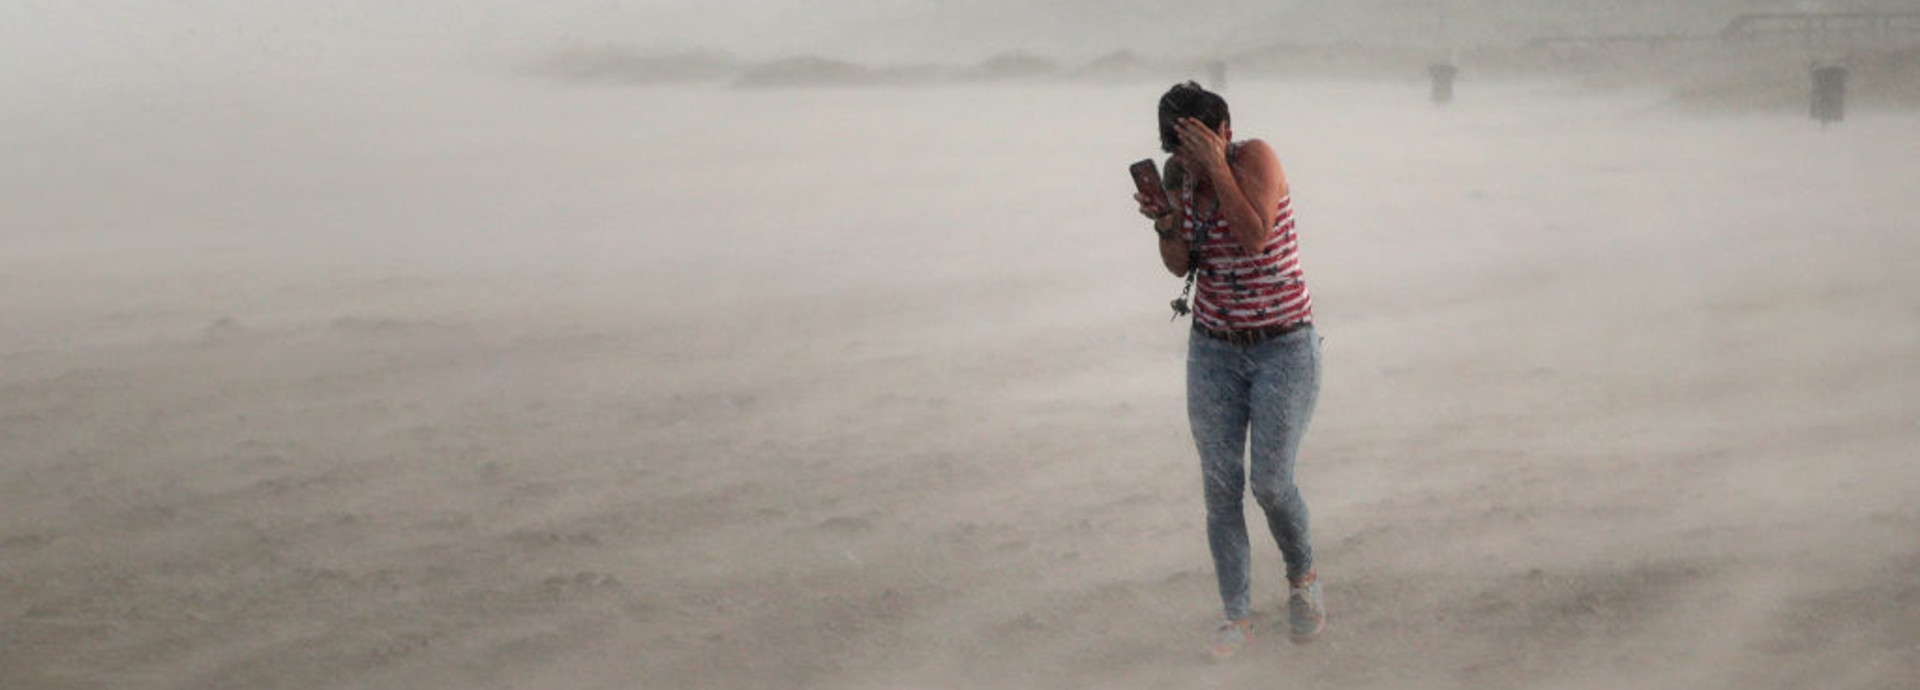 אישה מנסה לתפוס מחסה מהוריקן דוריאן בפלורידה (צילום: Scott Olson, Getty Images)